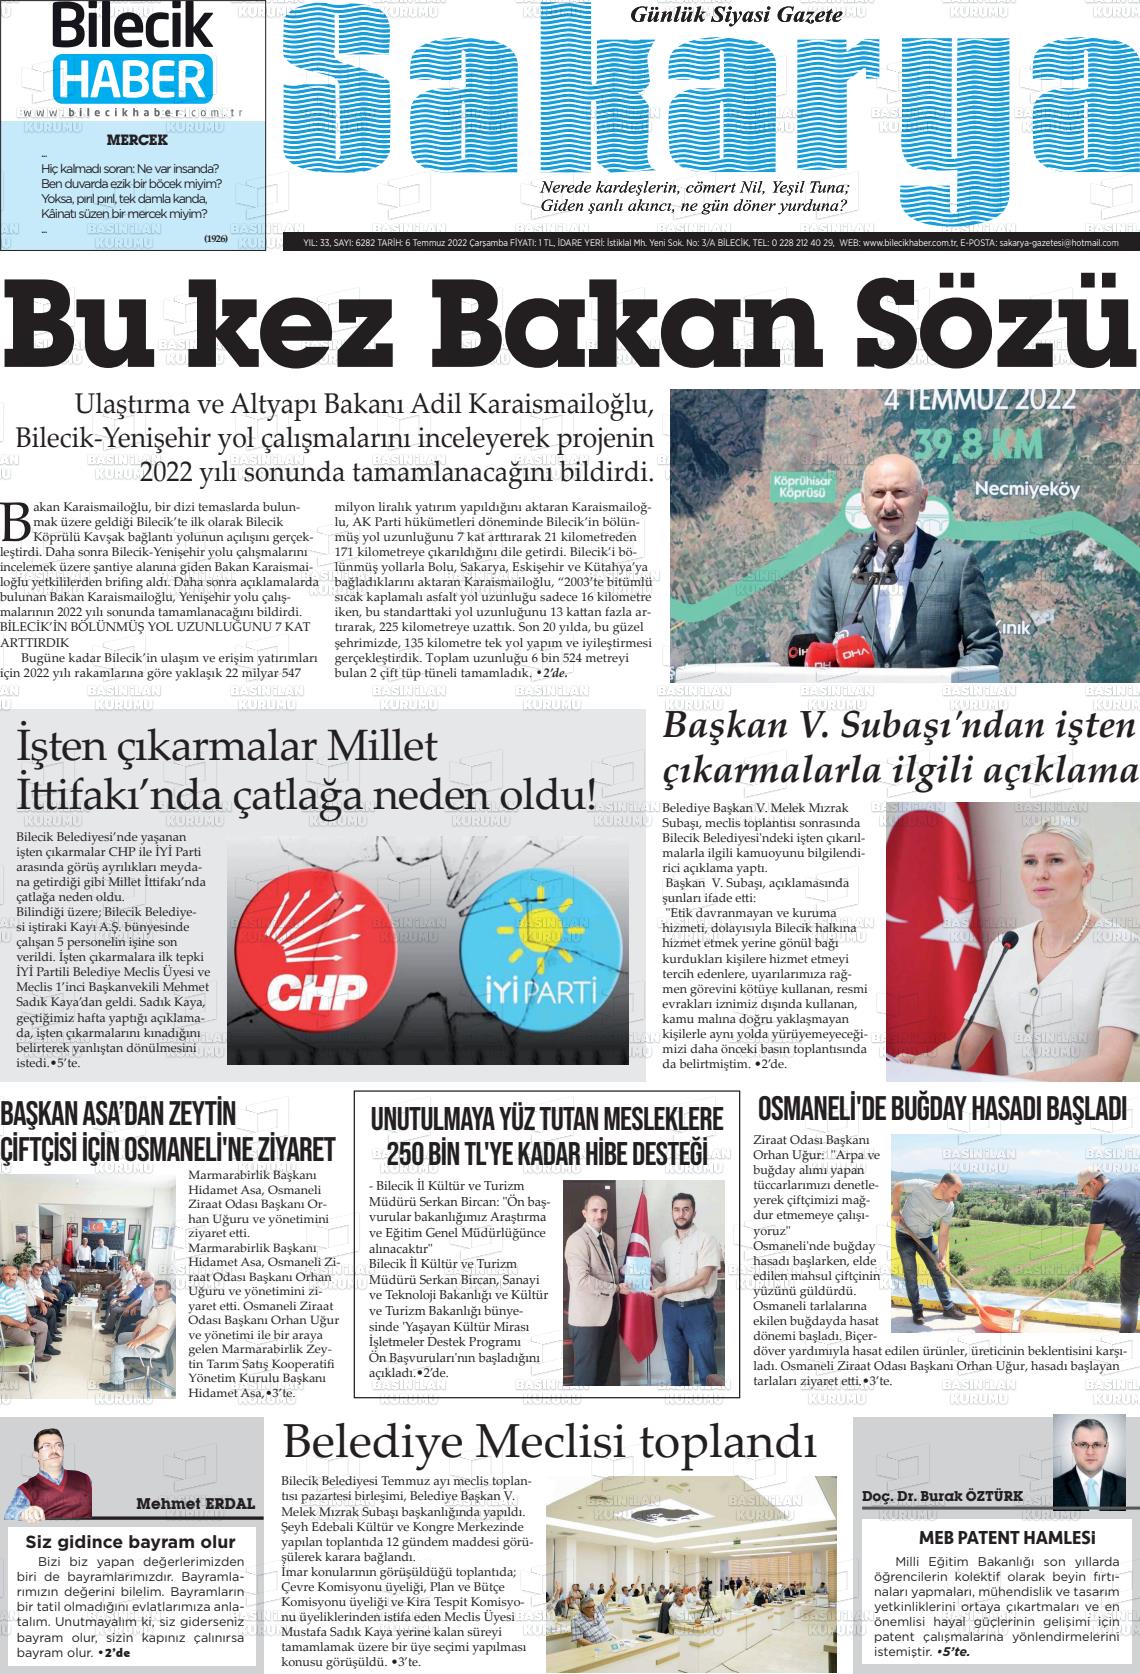 06 Temmuz 2022 Bilecik Haber Sakarya Gazete Manşeti